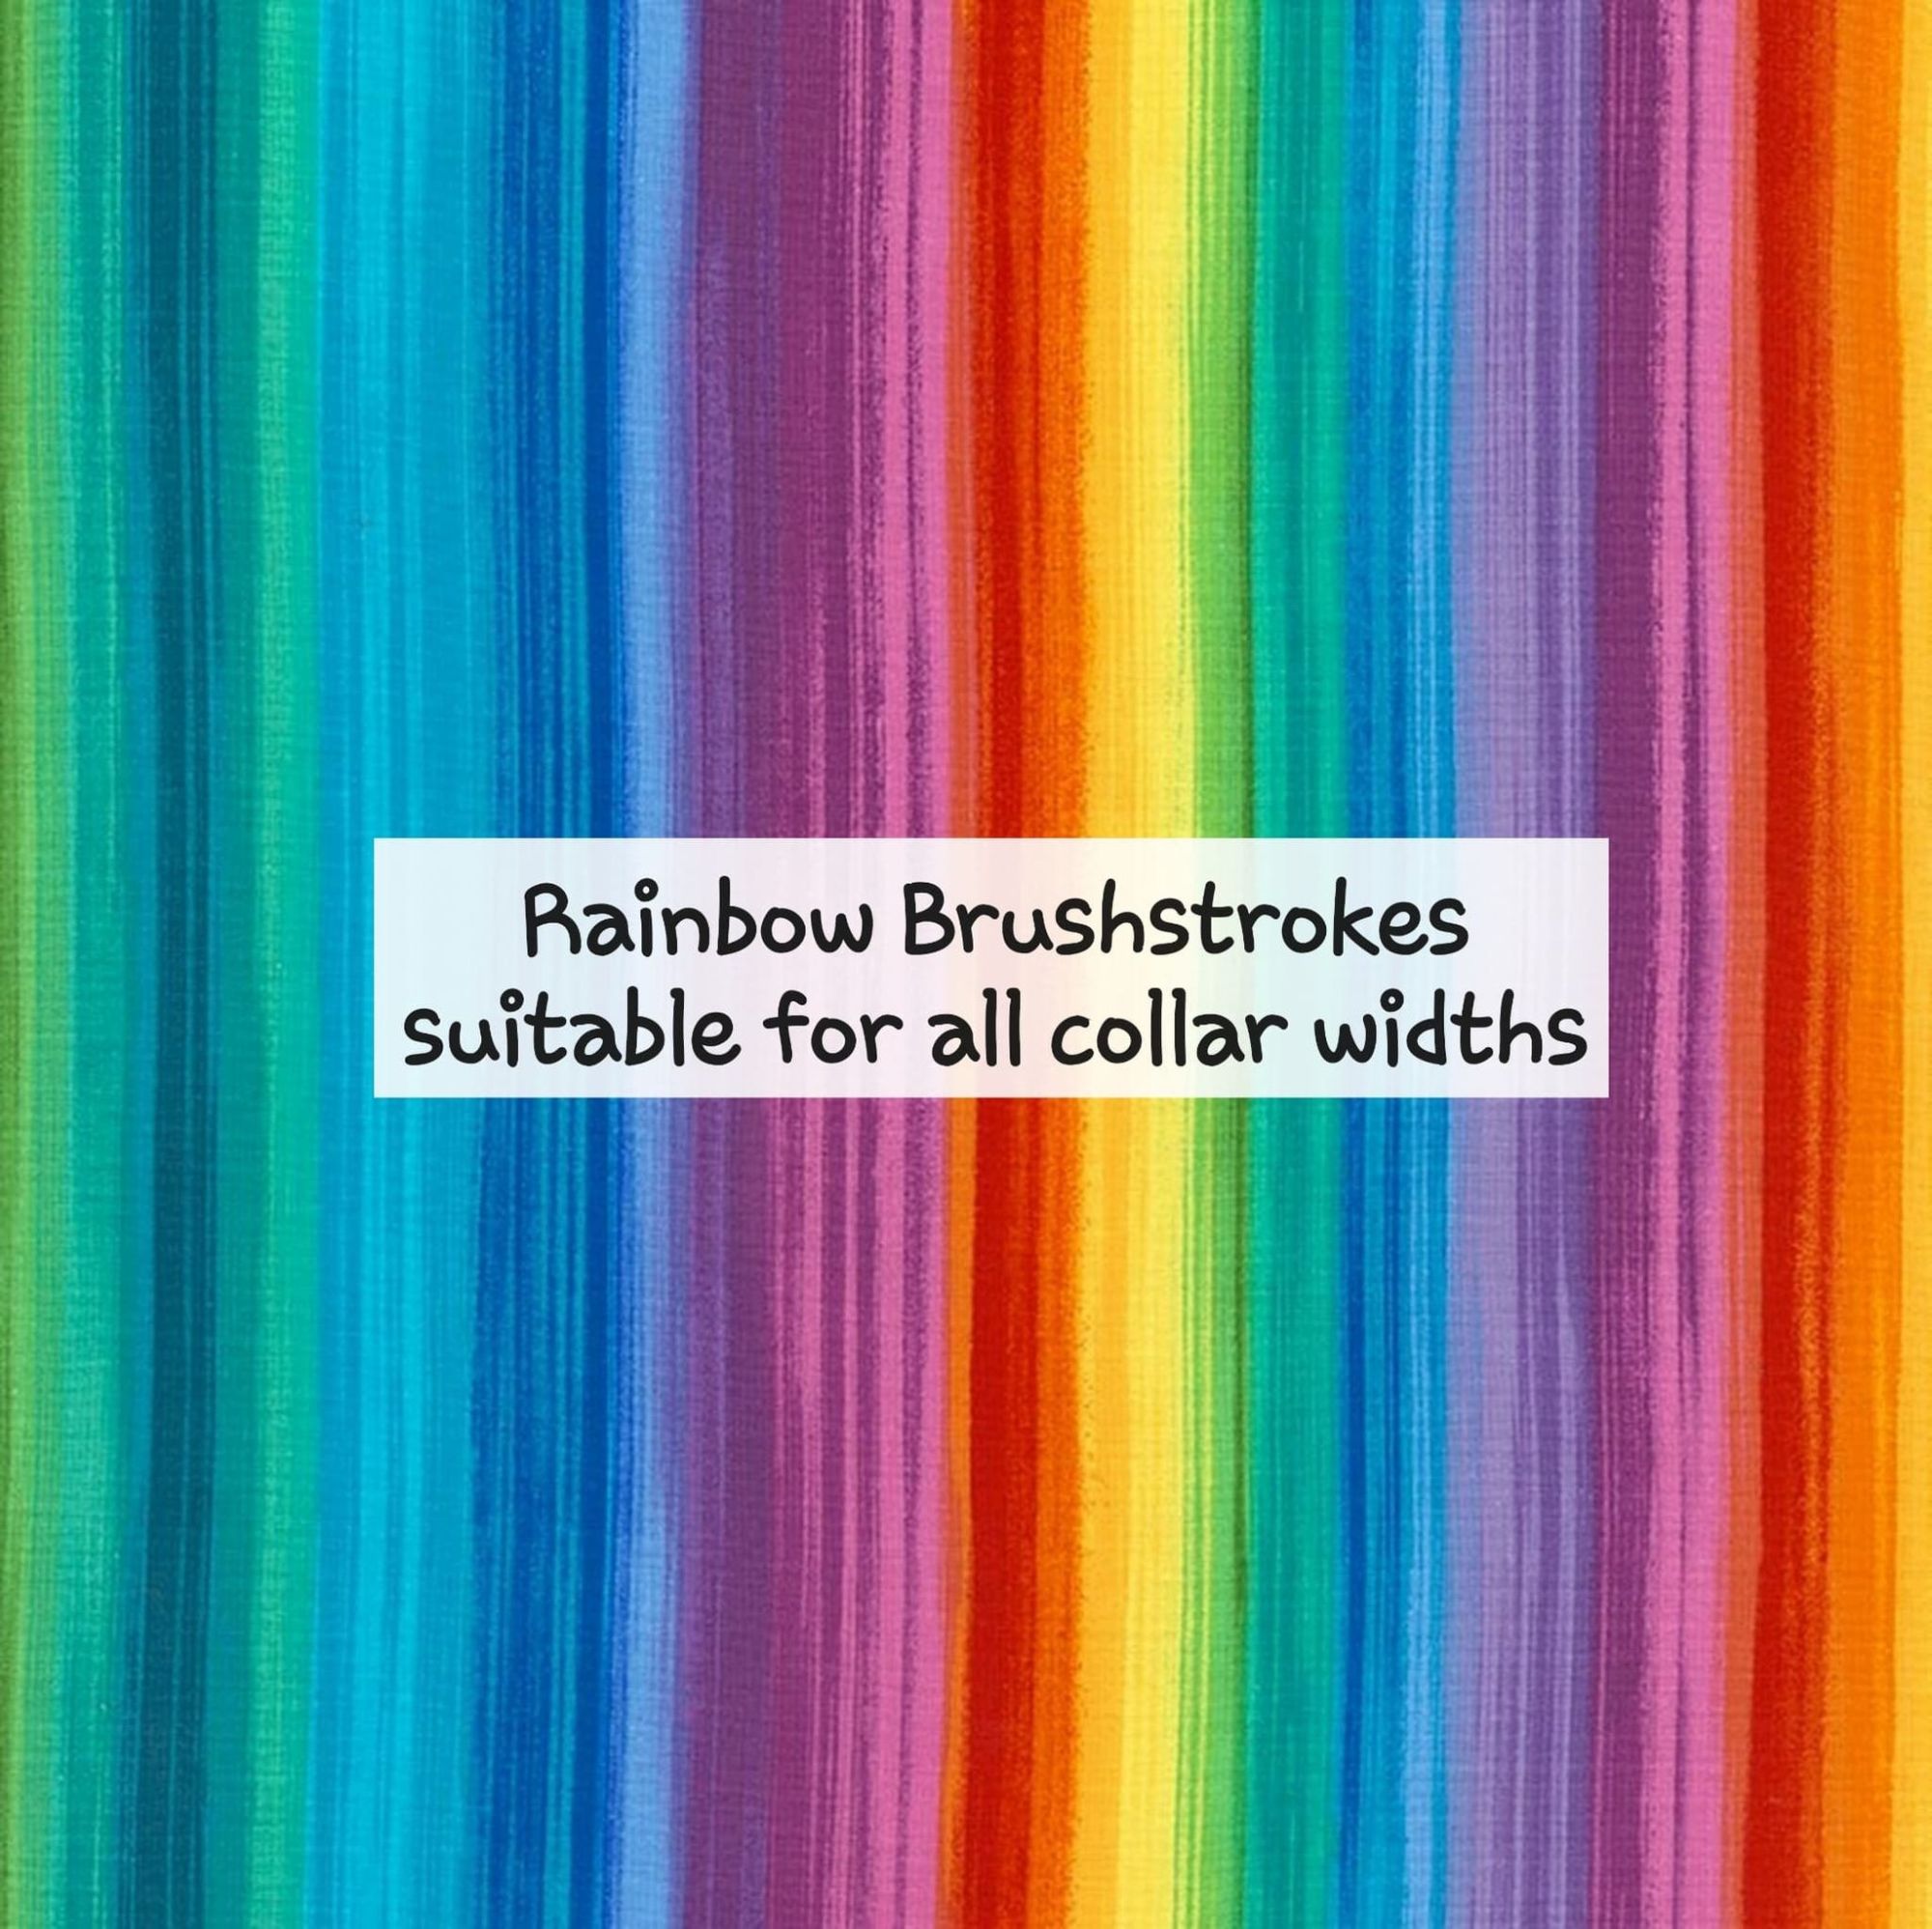 Rainbow Brushstrokes